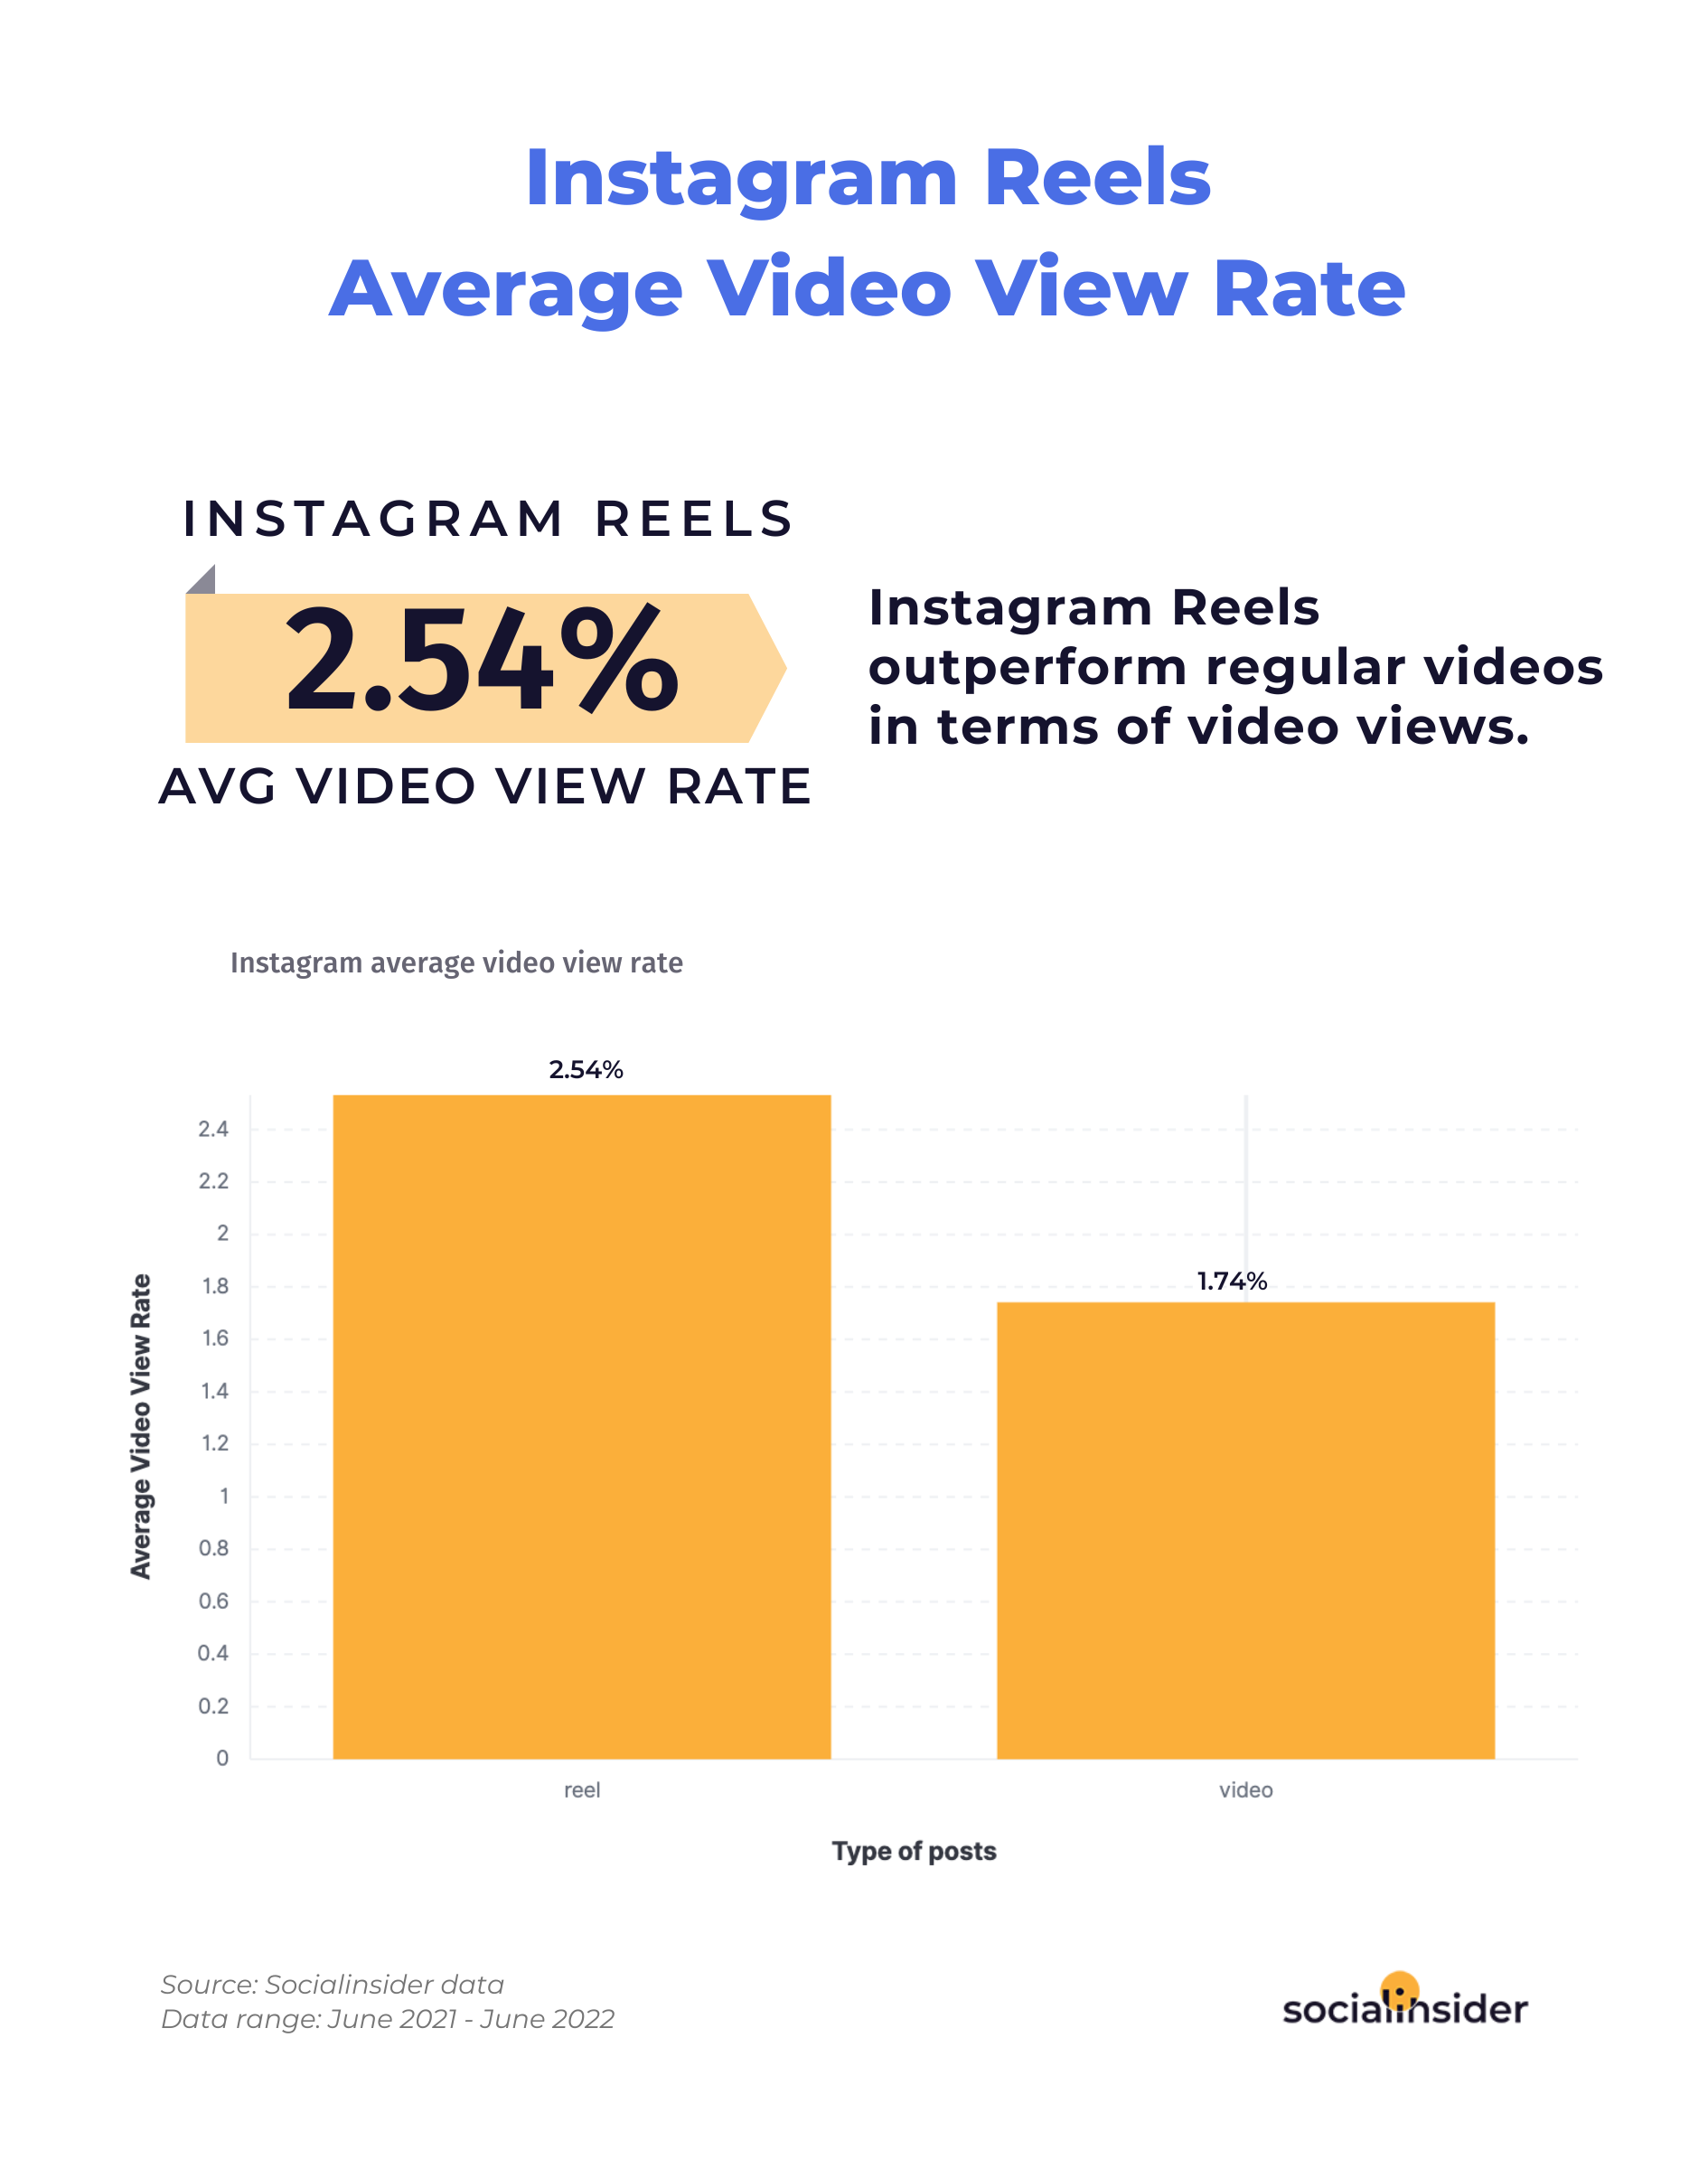 Instagram Reels view rate